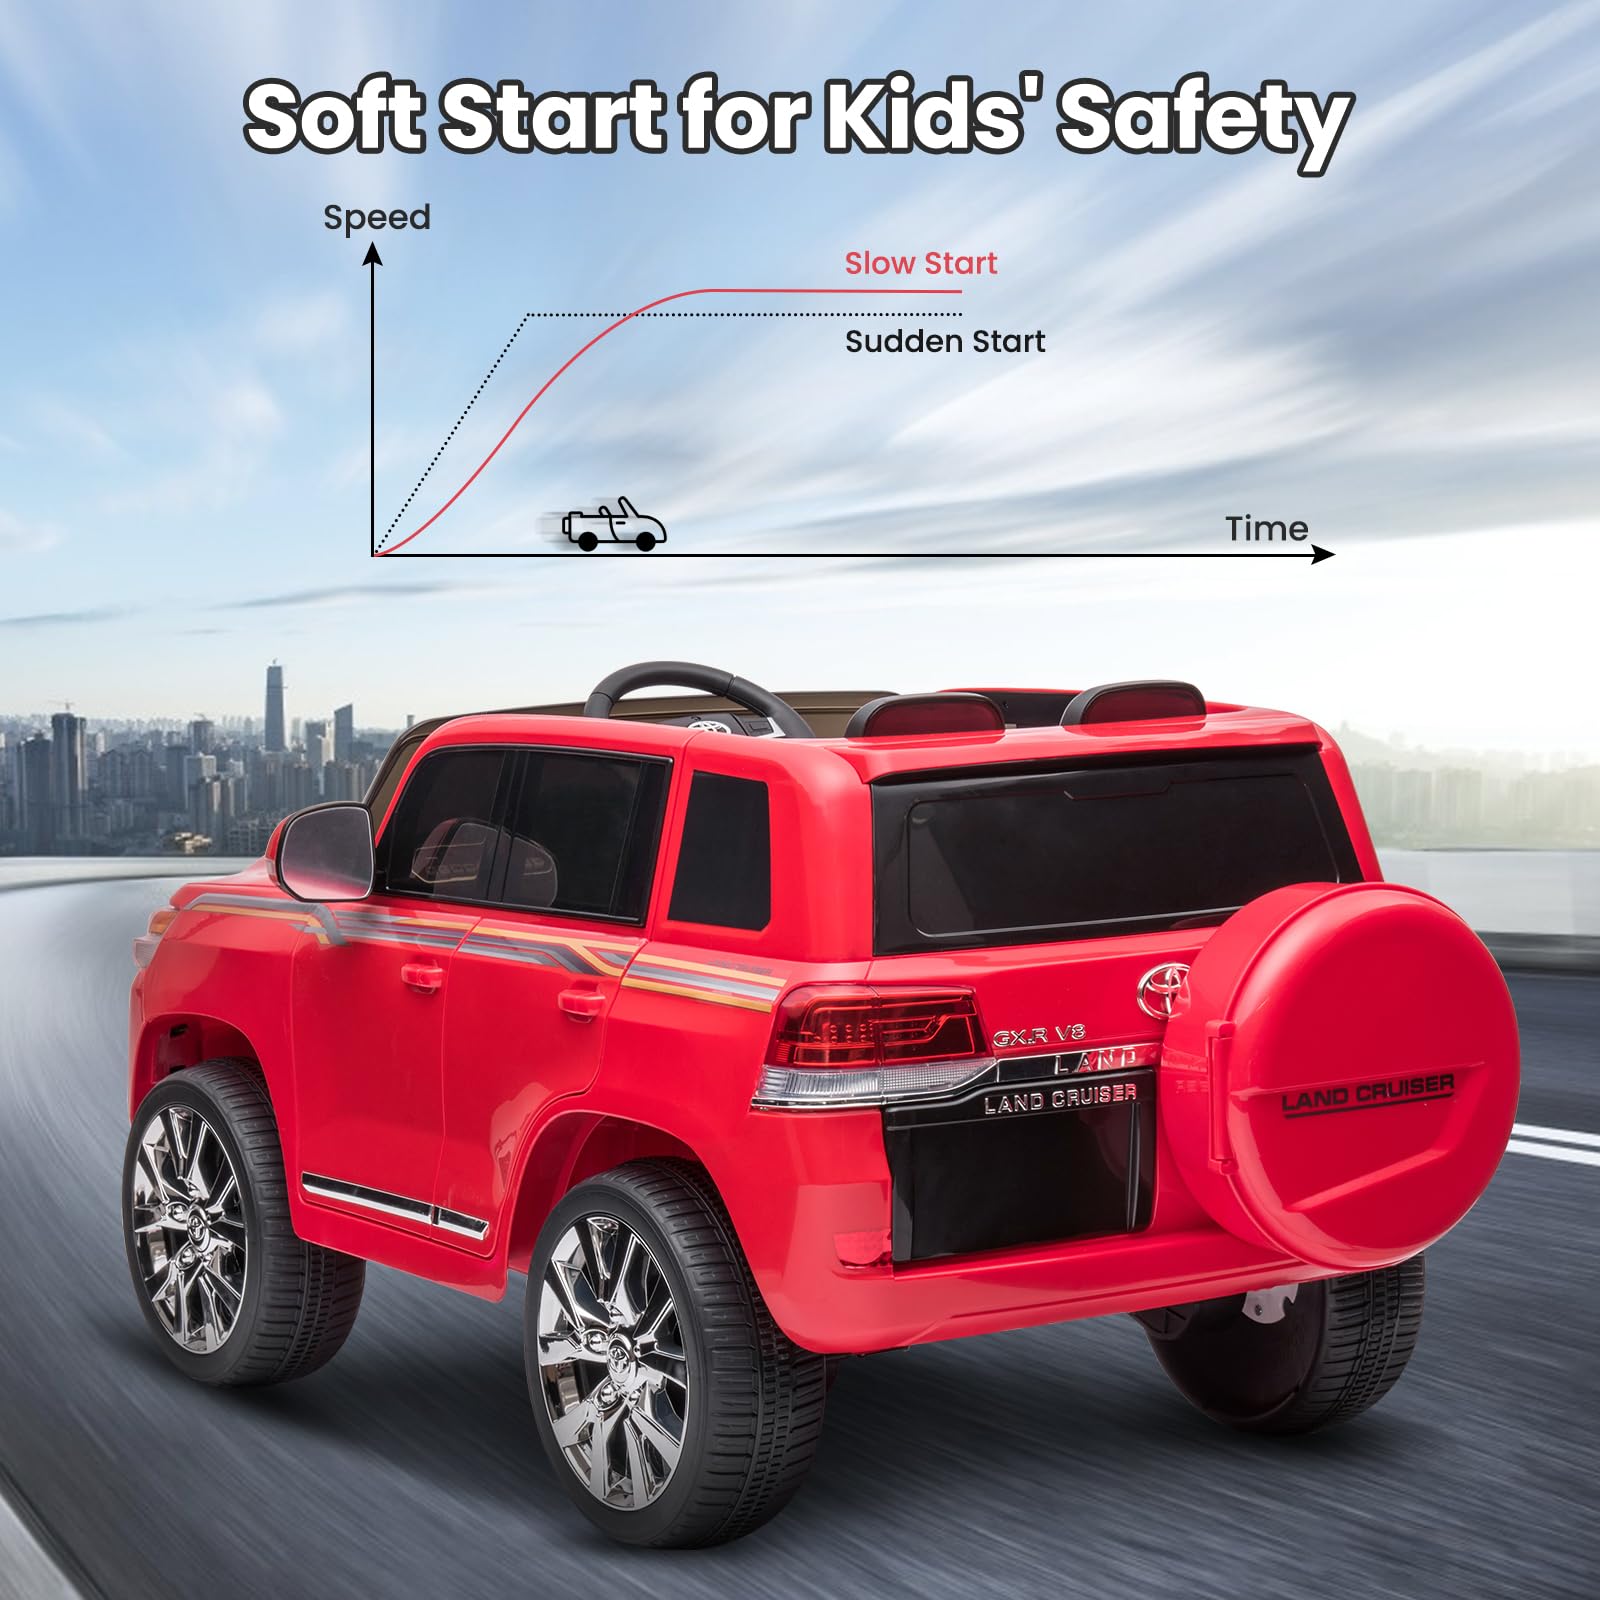 GARVEE 12V Toyota Land Cruiser Kids' Car: Remote, LED, 3 Speeds, Dual 45W Motors, USB Music, Seat Belt, CPC & ASTM Approved